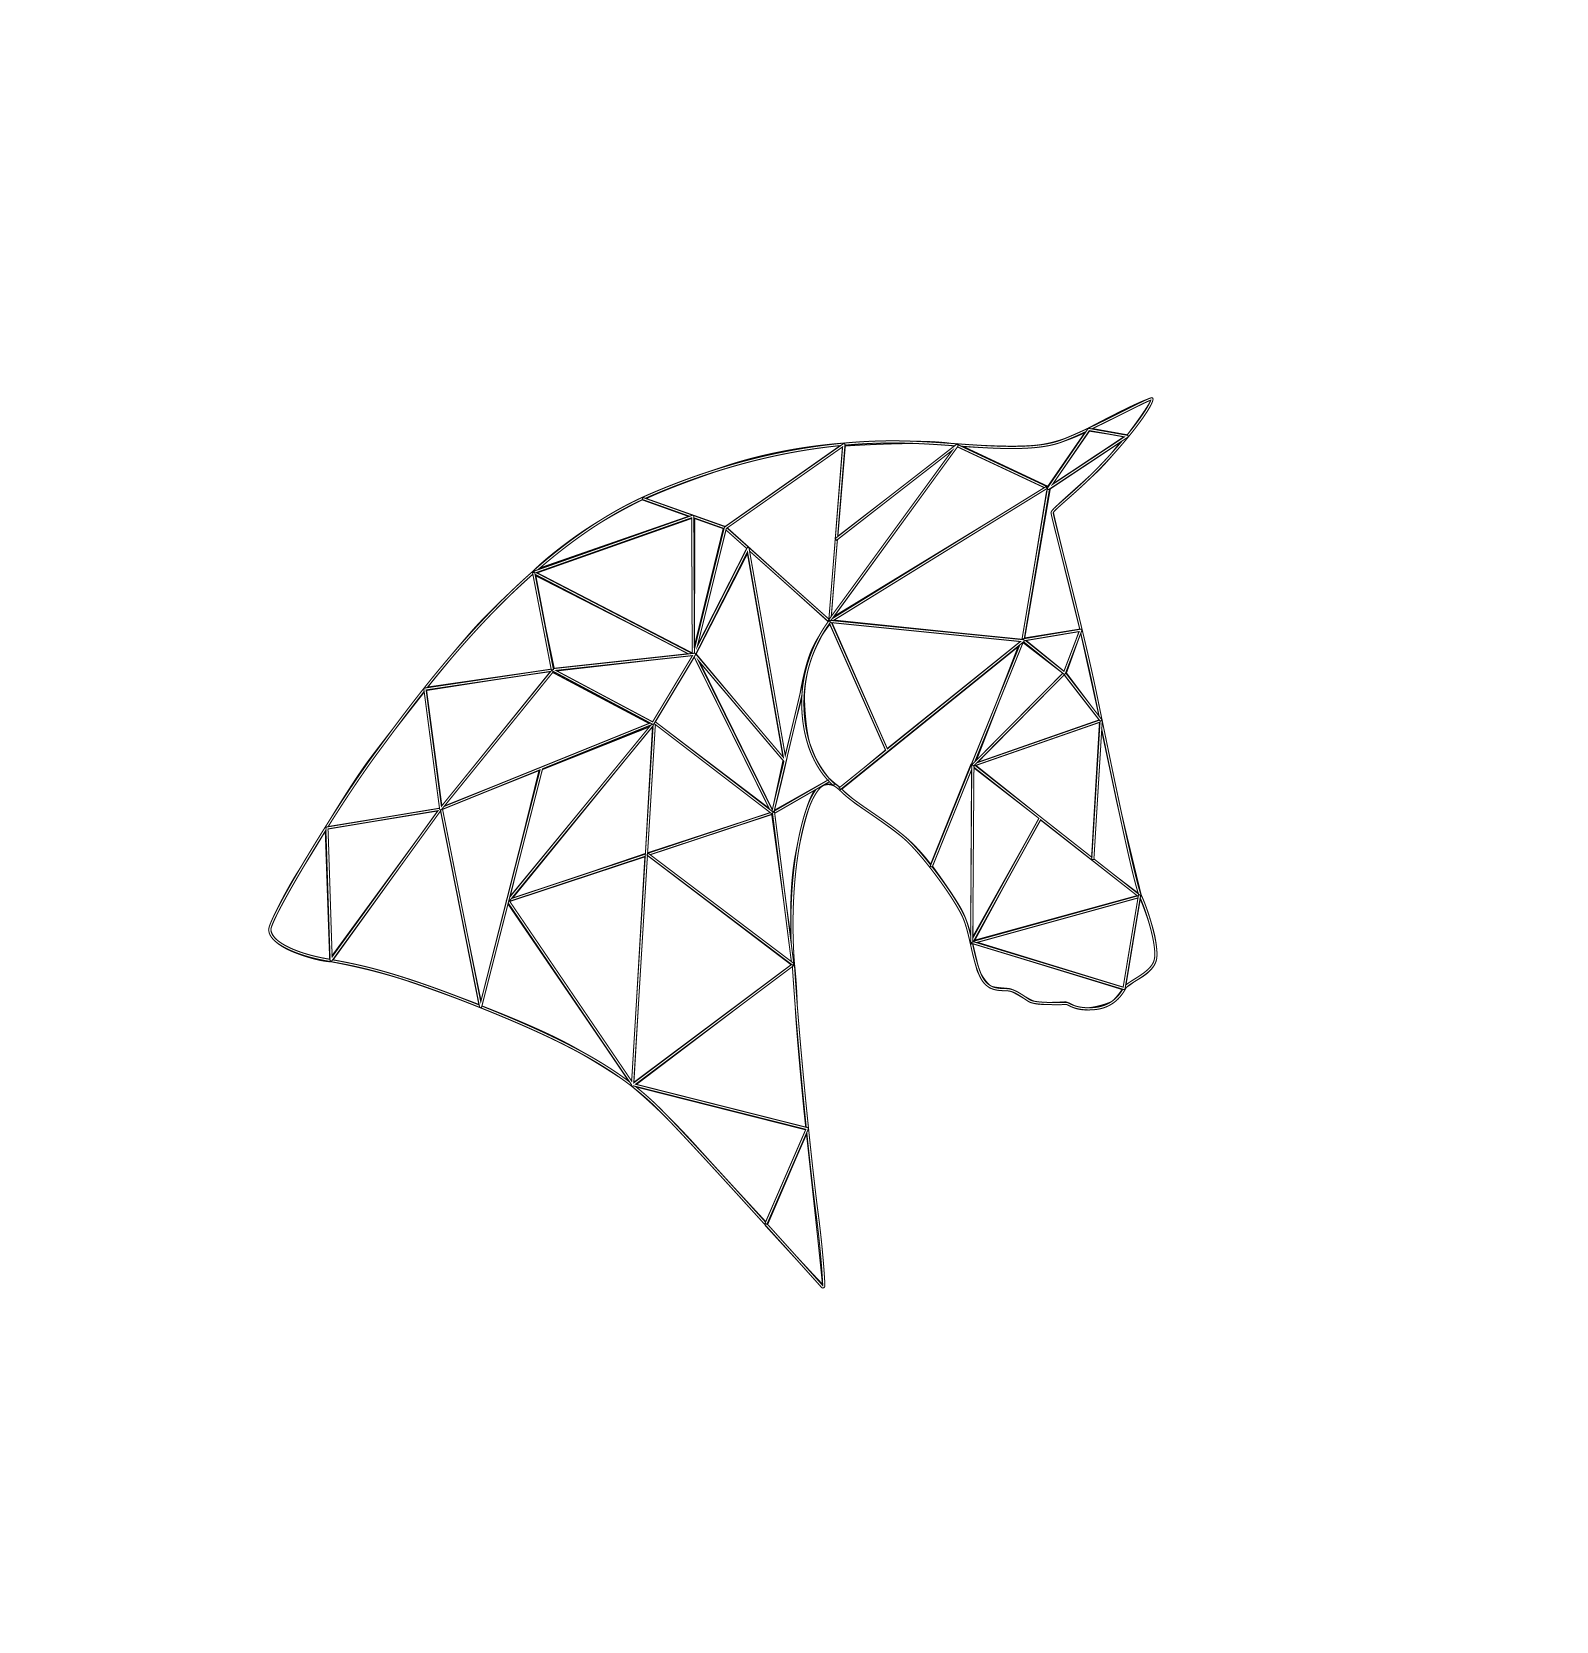 Rossmueller Brands